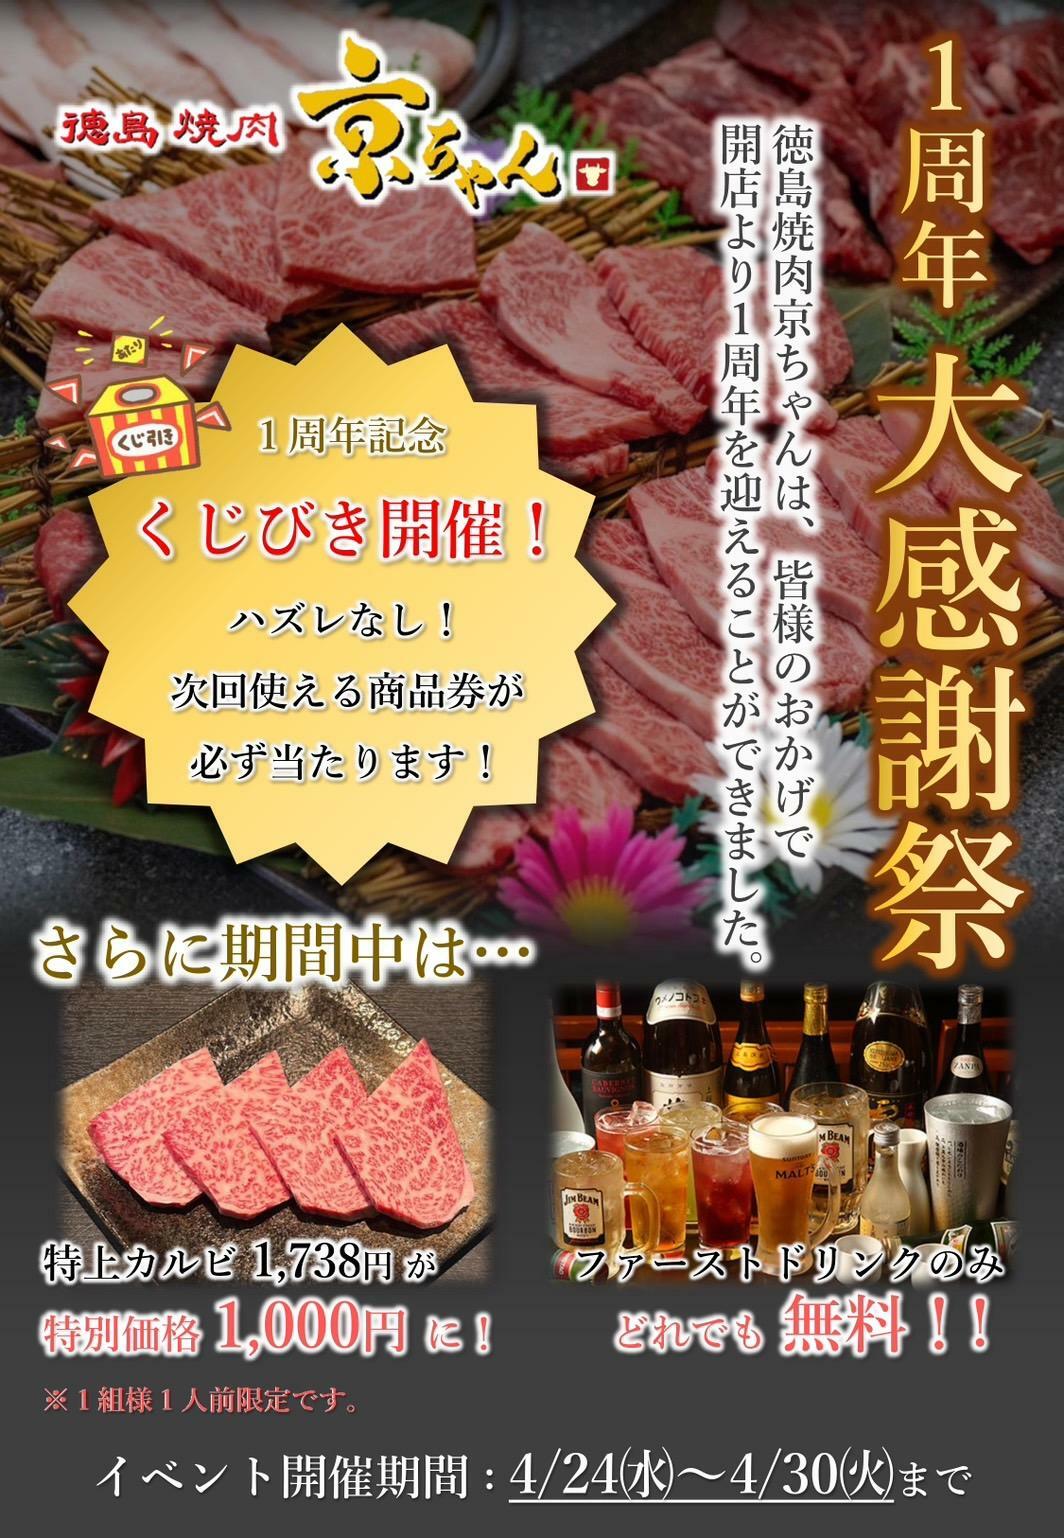 「徳島焼肉 京ちゃん」一周年イベントに関する内容。画像提供：関係者様